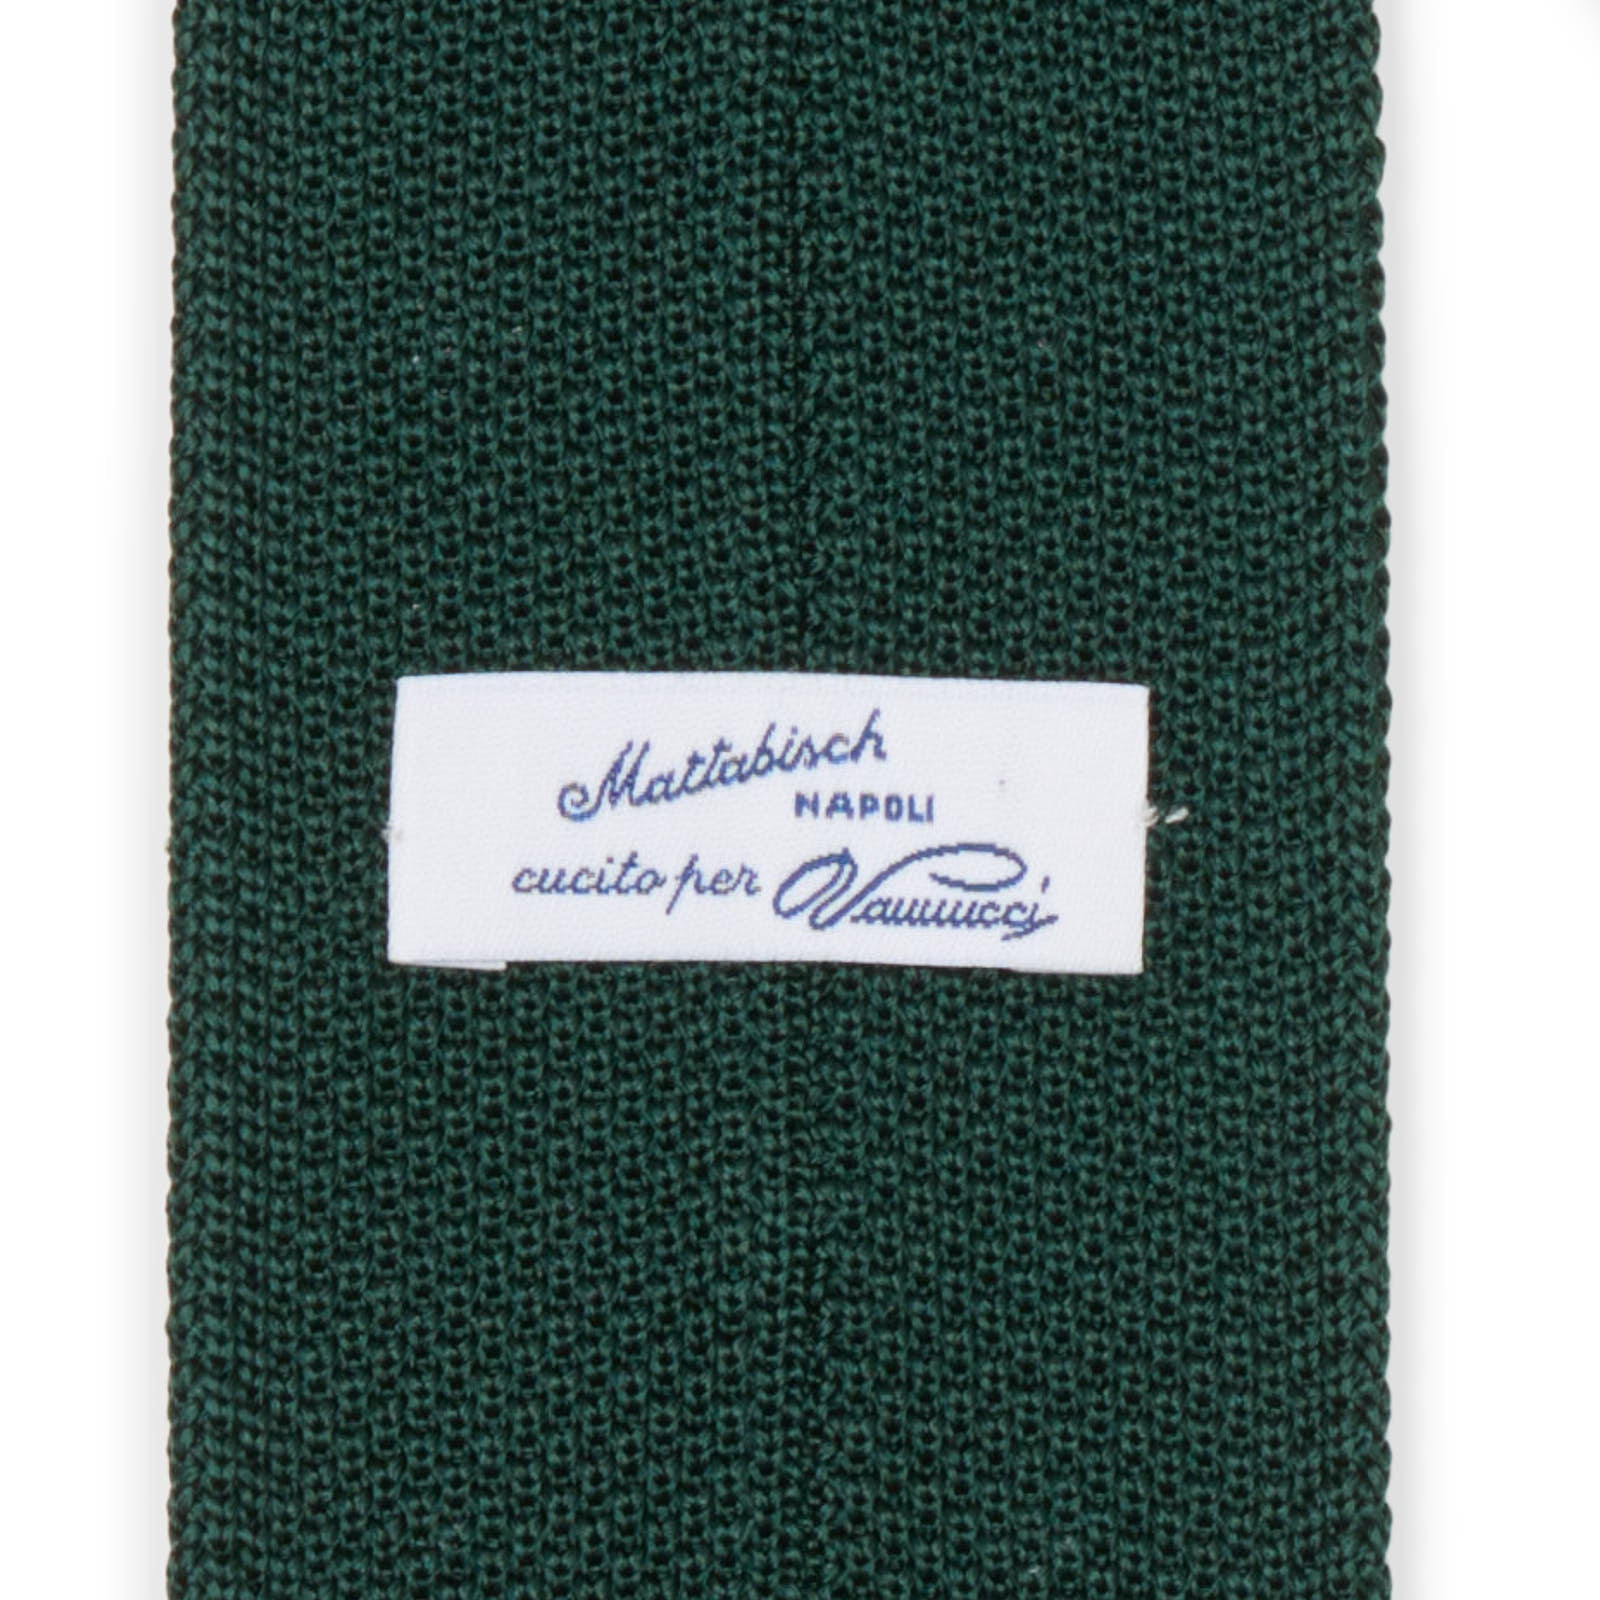 MATTABISCH FOR VANNUCCI Dark Green Dotted Silk Knit Tie NEW